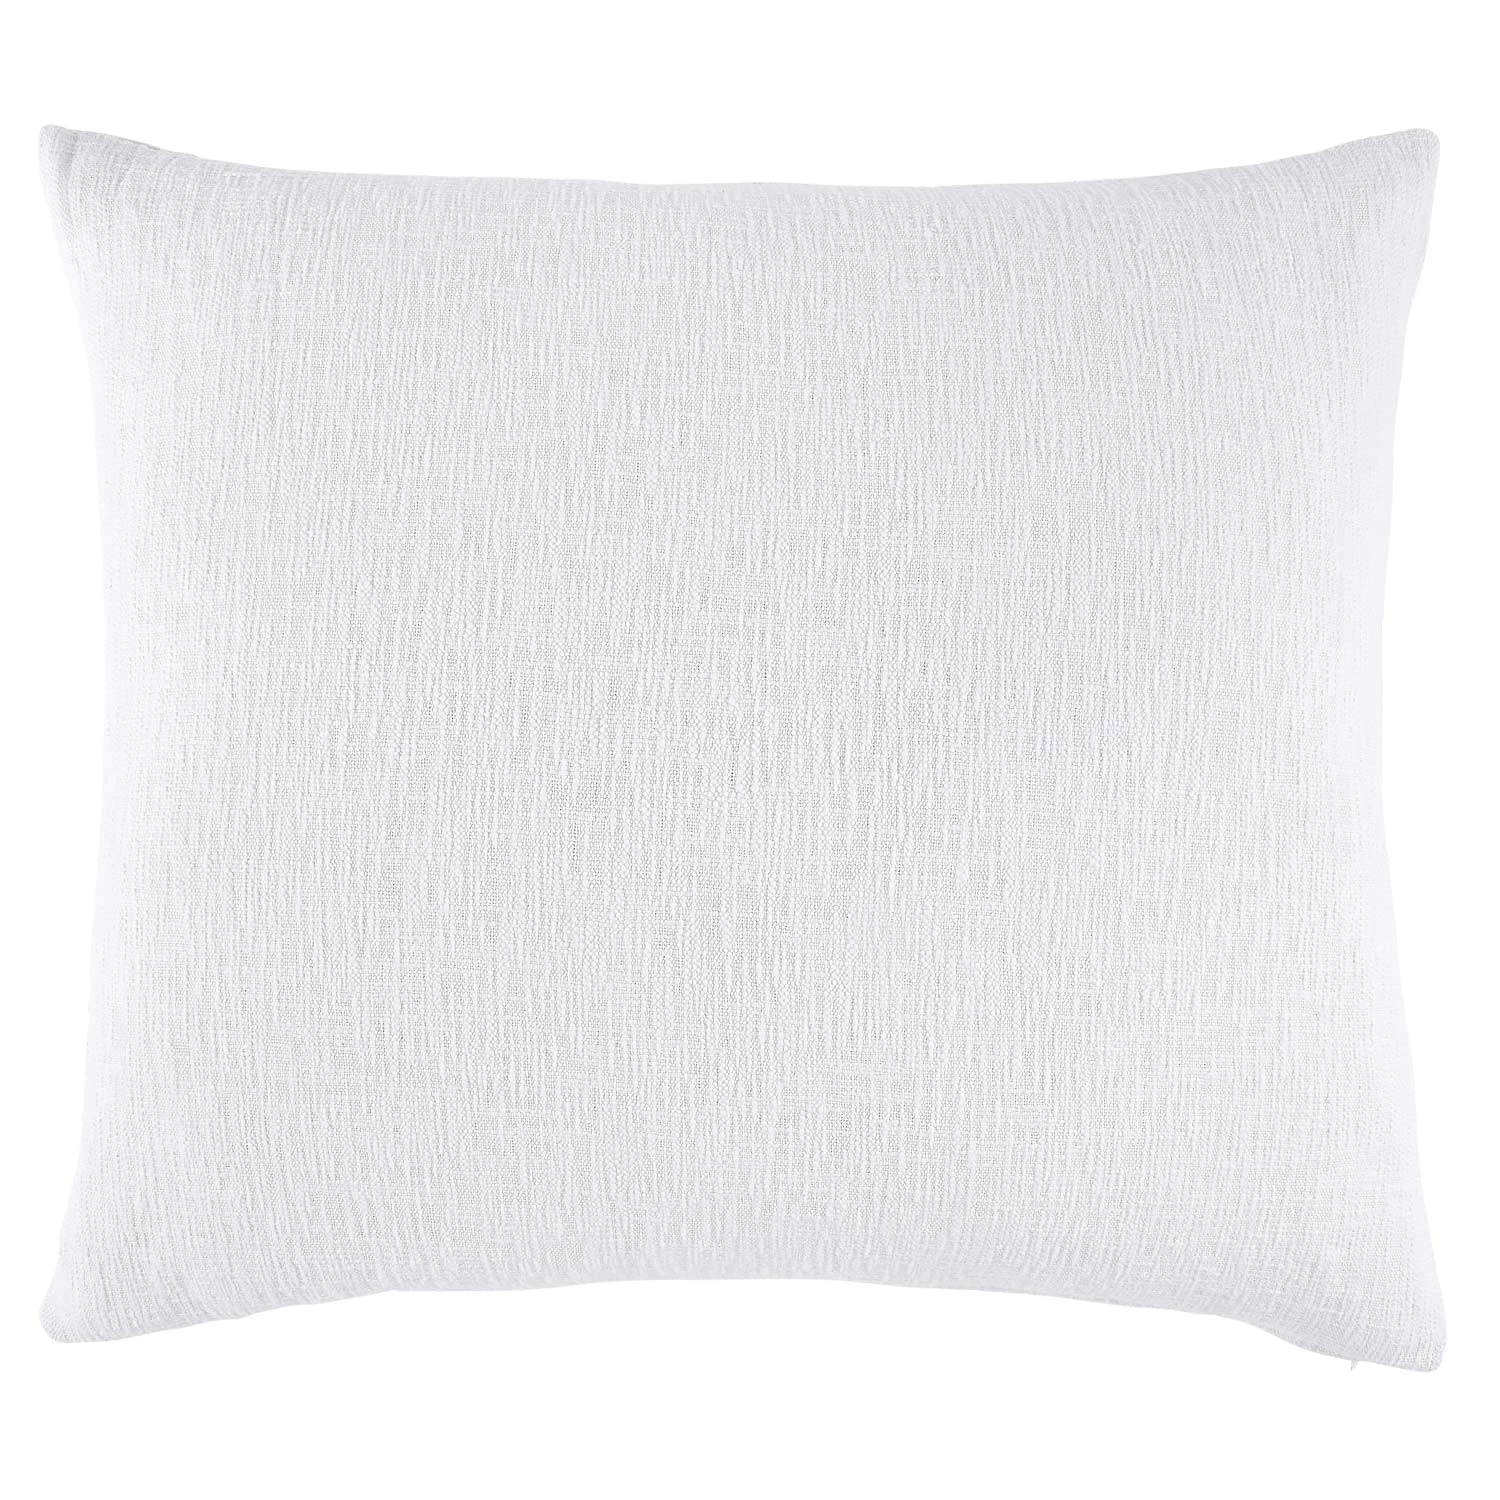 Woven White King Euro Pillow Cover